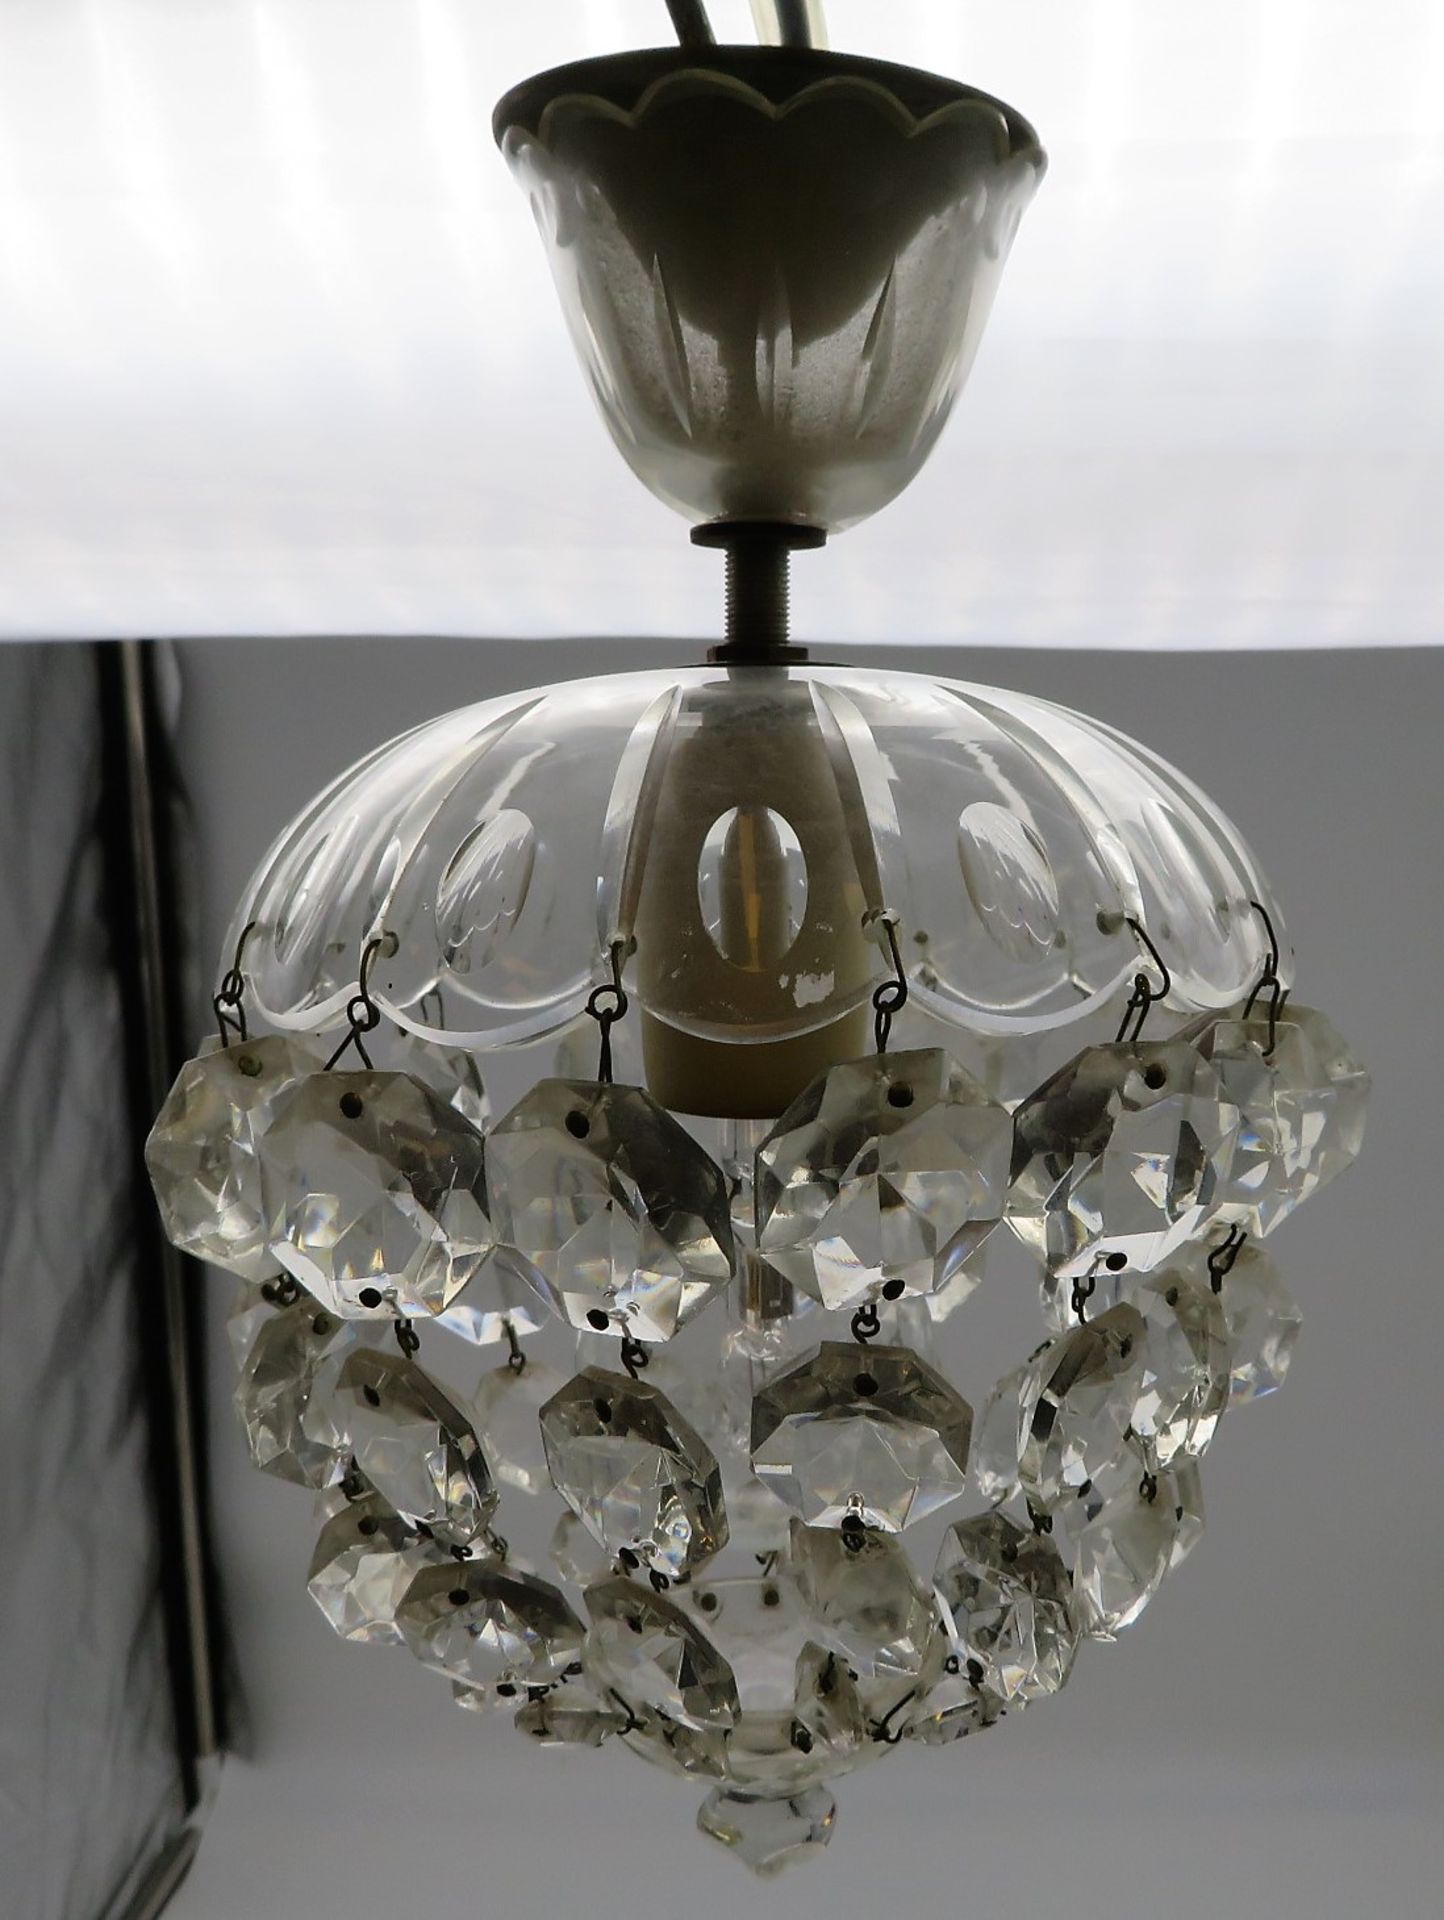 Kleine Deckenlampe mit Kristallbehang, um 1900, farbloses Kristallglas, h 25 cm, d 15 cm.